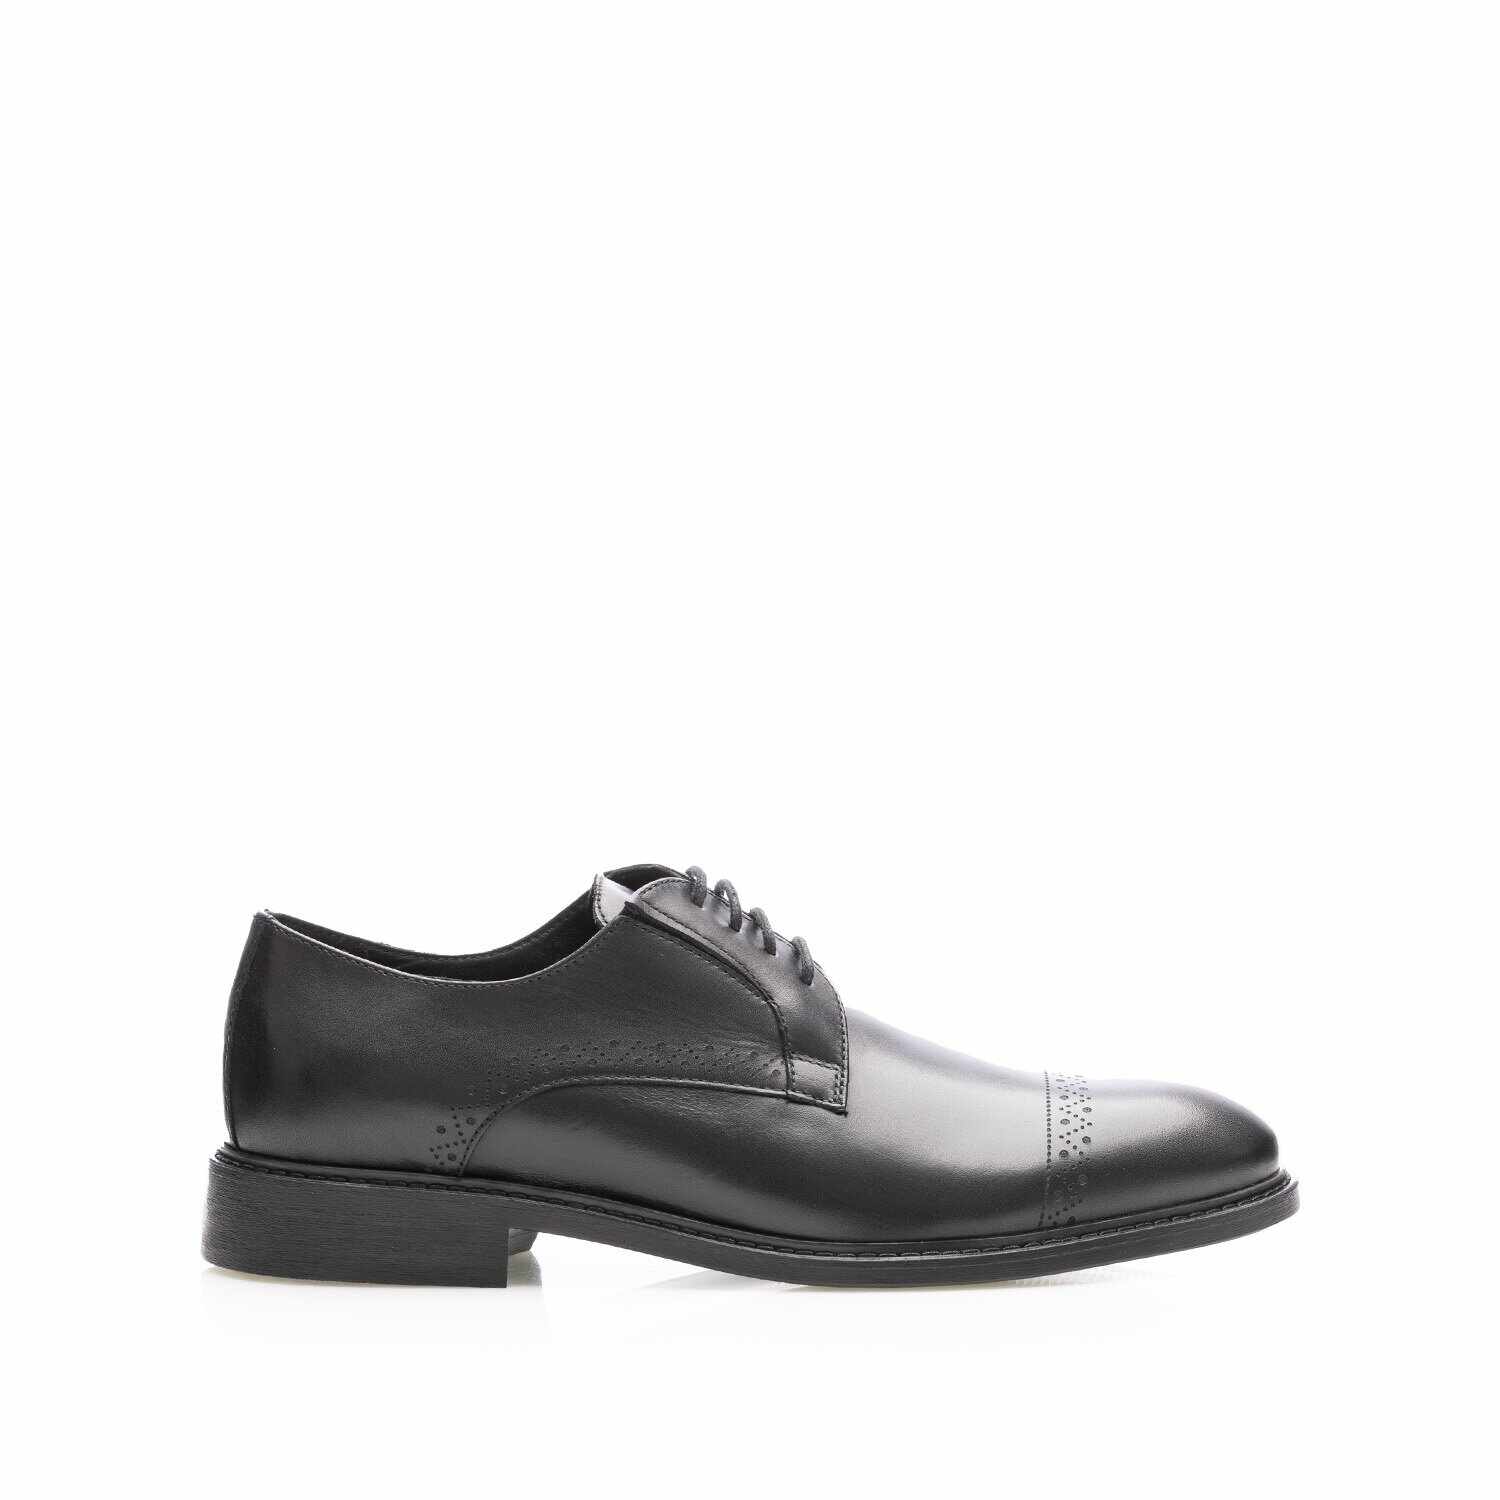 Pantofi casual bărbați din piele naturală, Leofex - 550 Negru Box